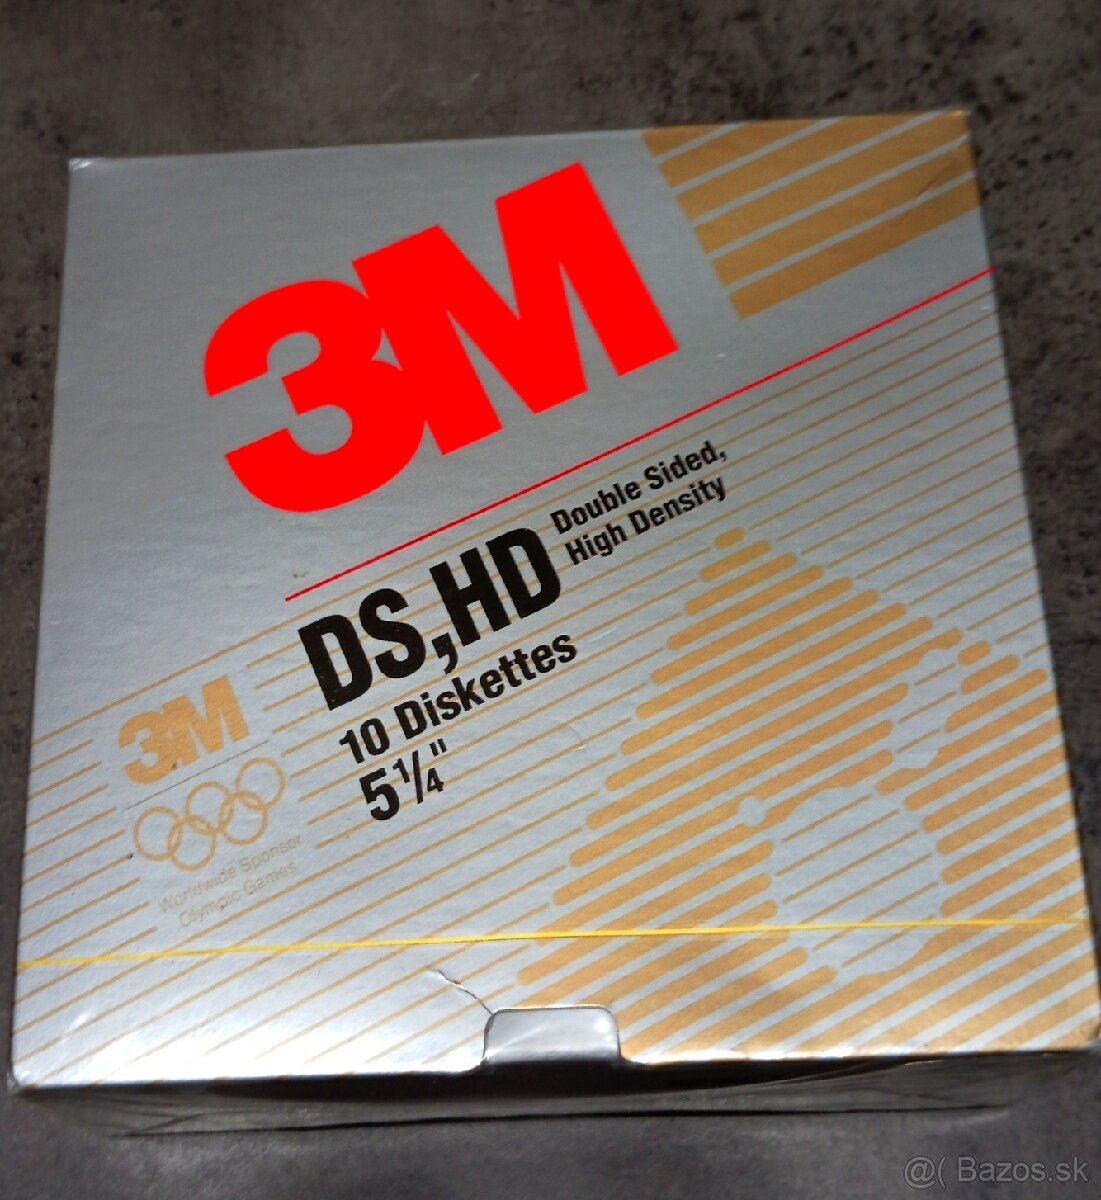 Originálne nerozbalené retro diskety 3M 5 1/4" od IBM